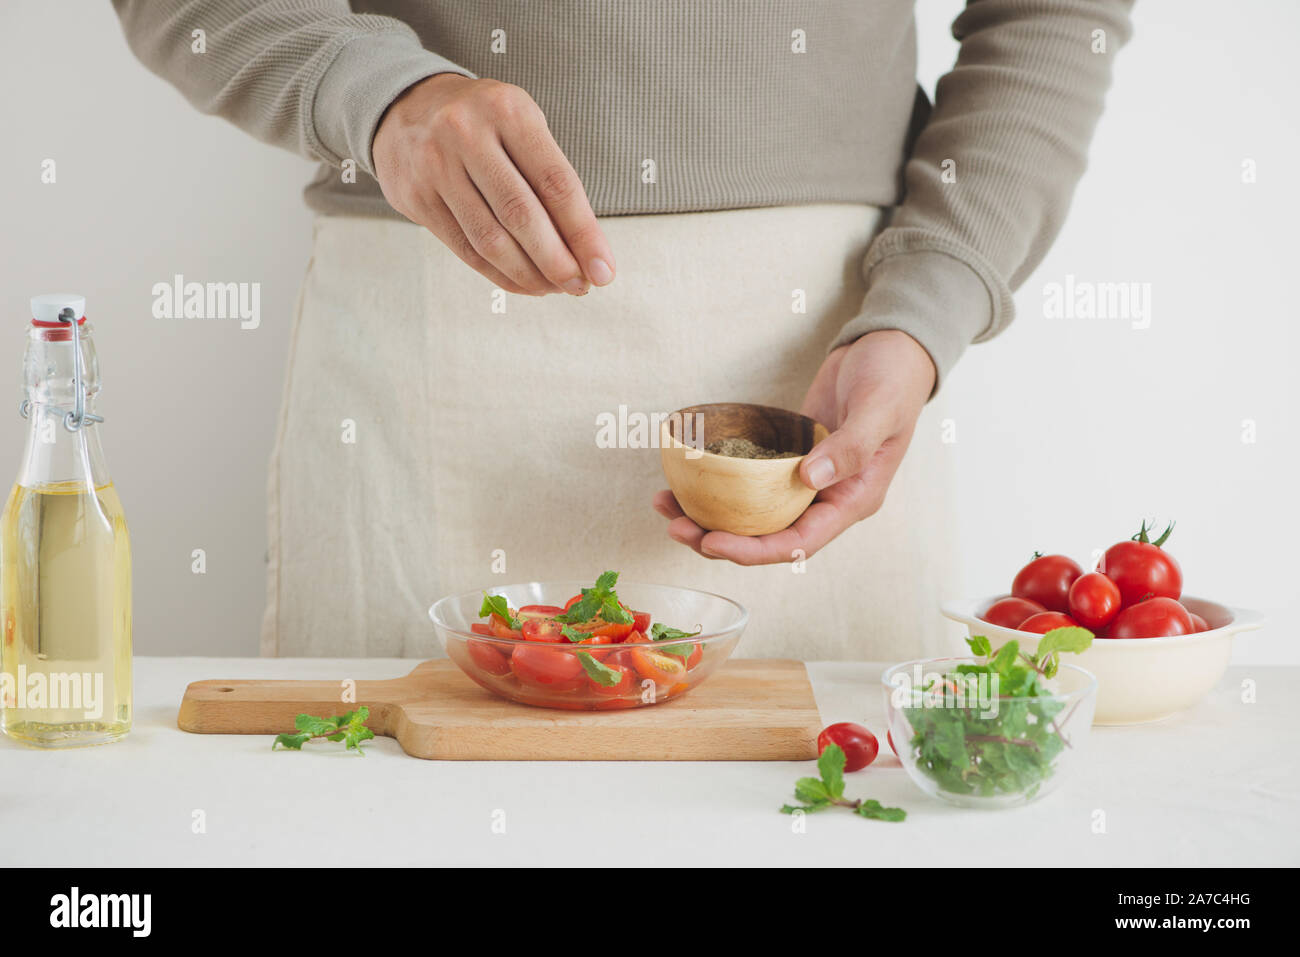 Salade fraîche avec tomate, mozzarella et basilic. Concept pour un apéritif sain et savoureux Banque D'Images